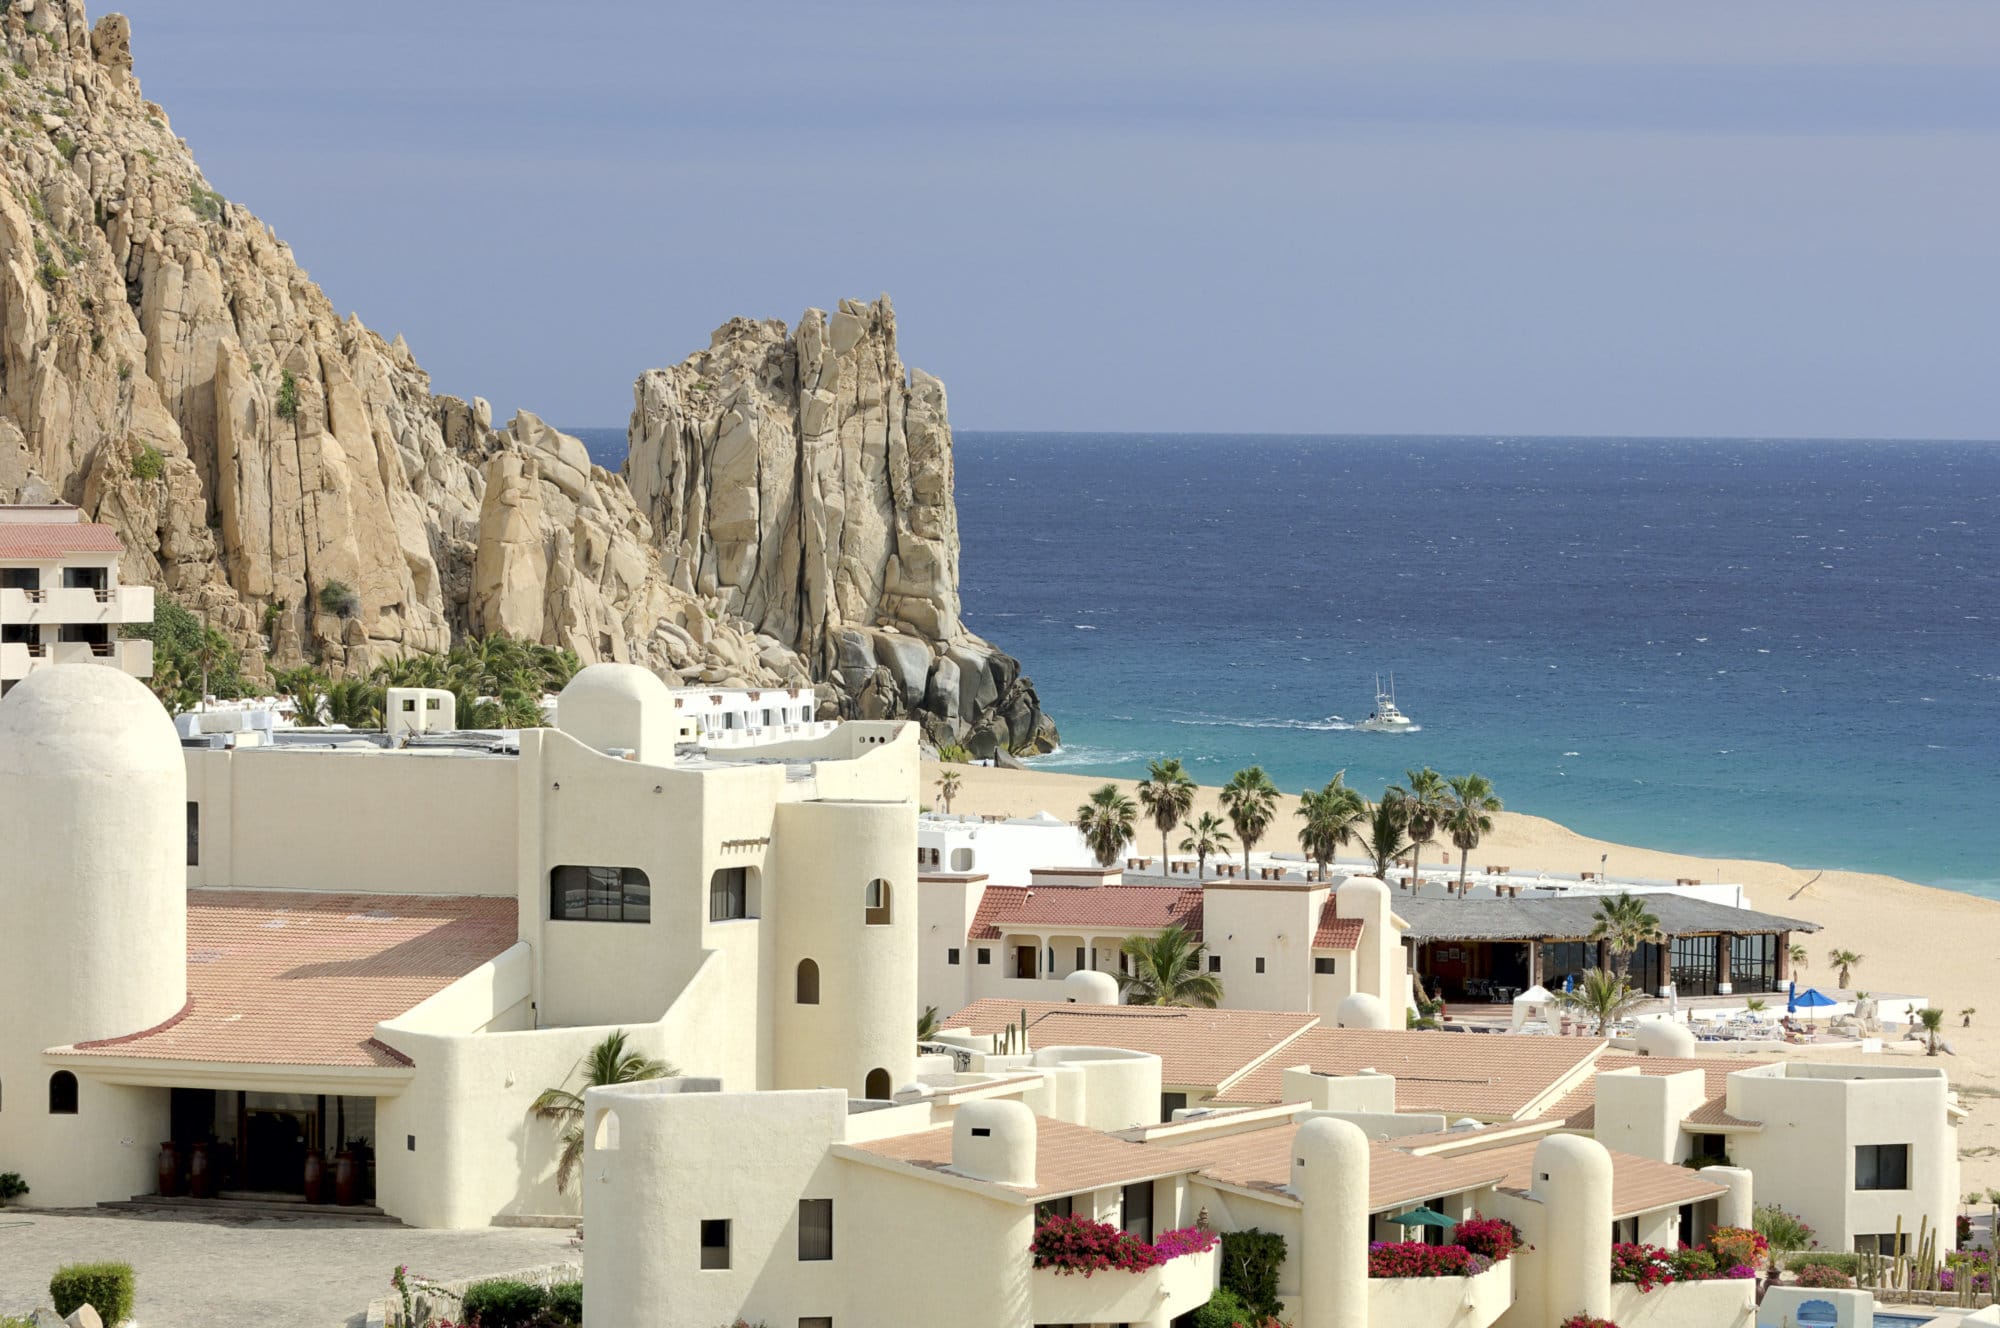 A resort in Cabo San Lucas, Baja California Sur, Mexico beside Finesterra Rock. 12MP camera.